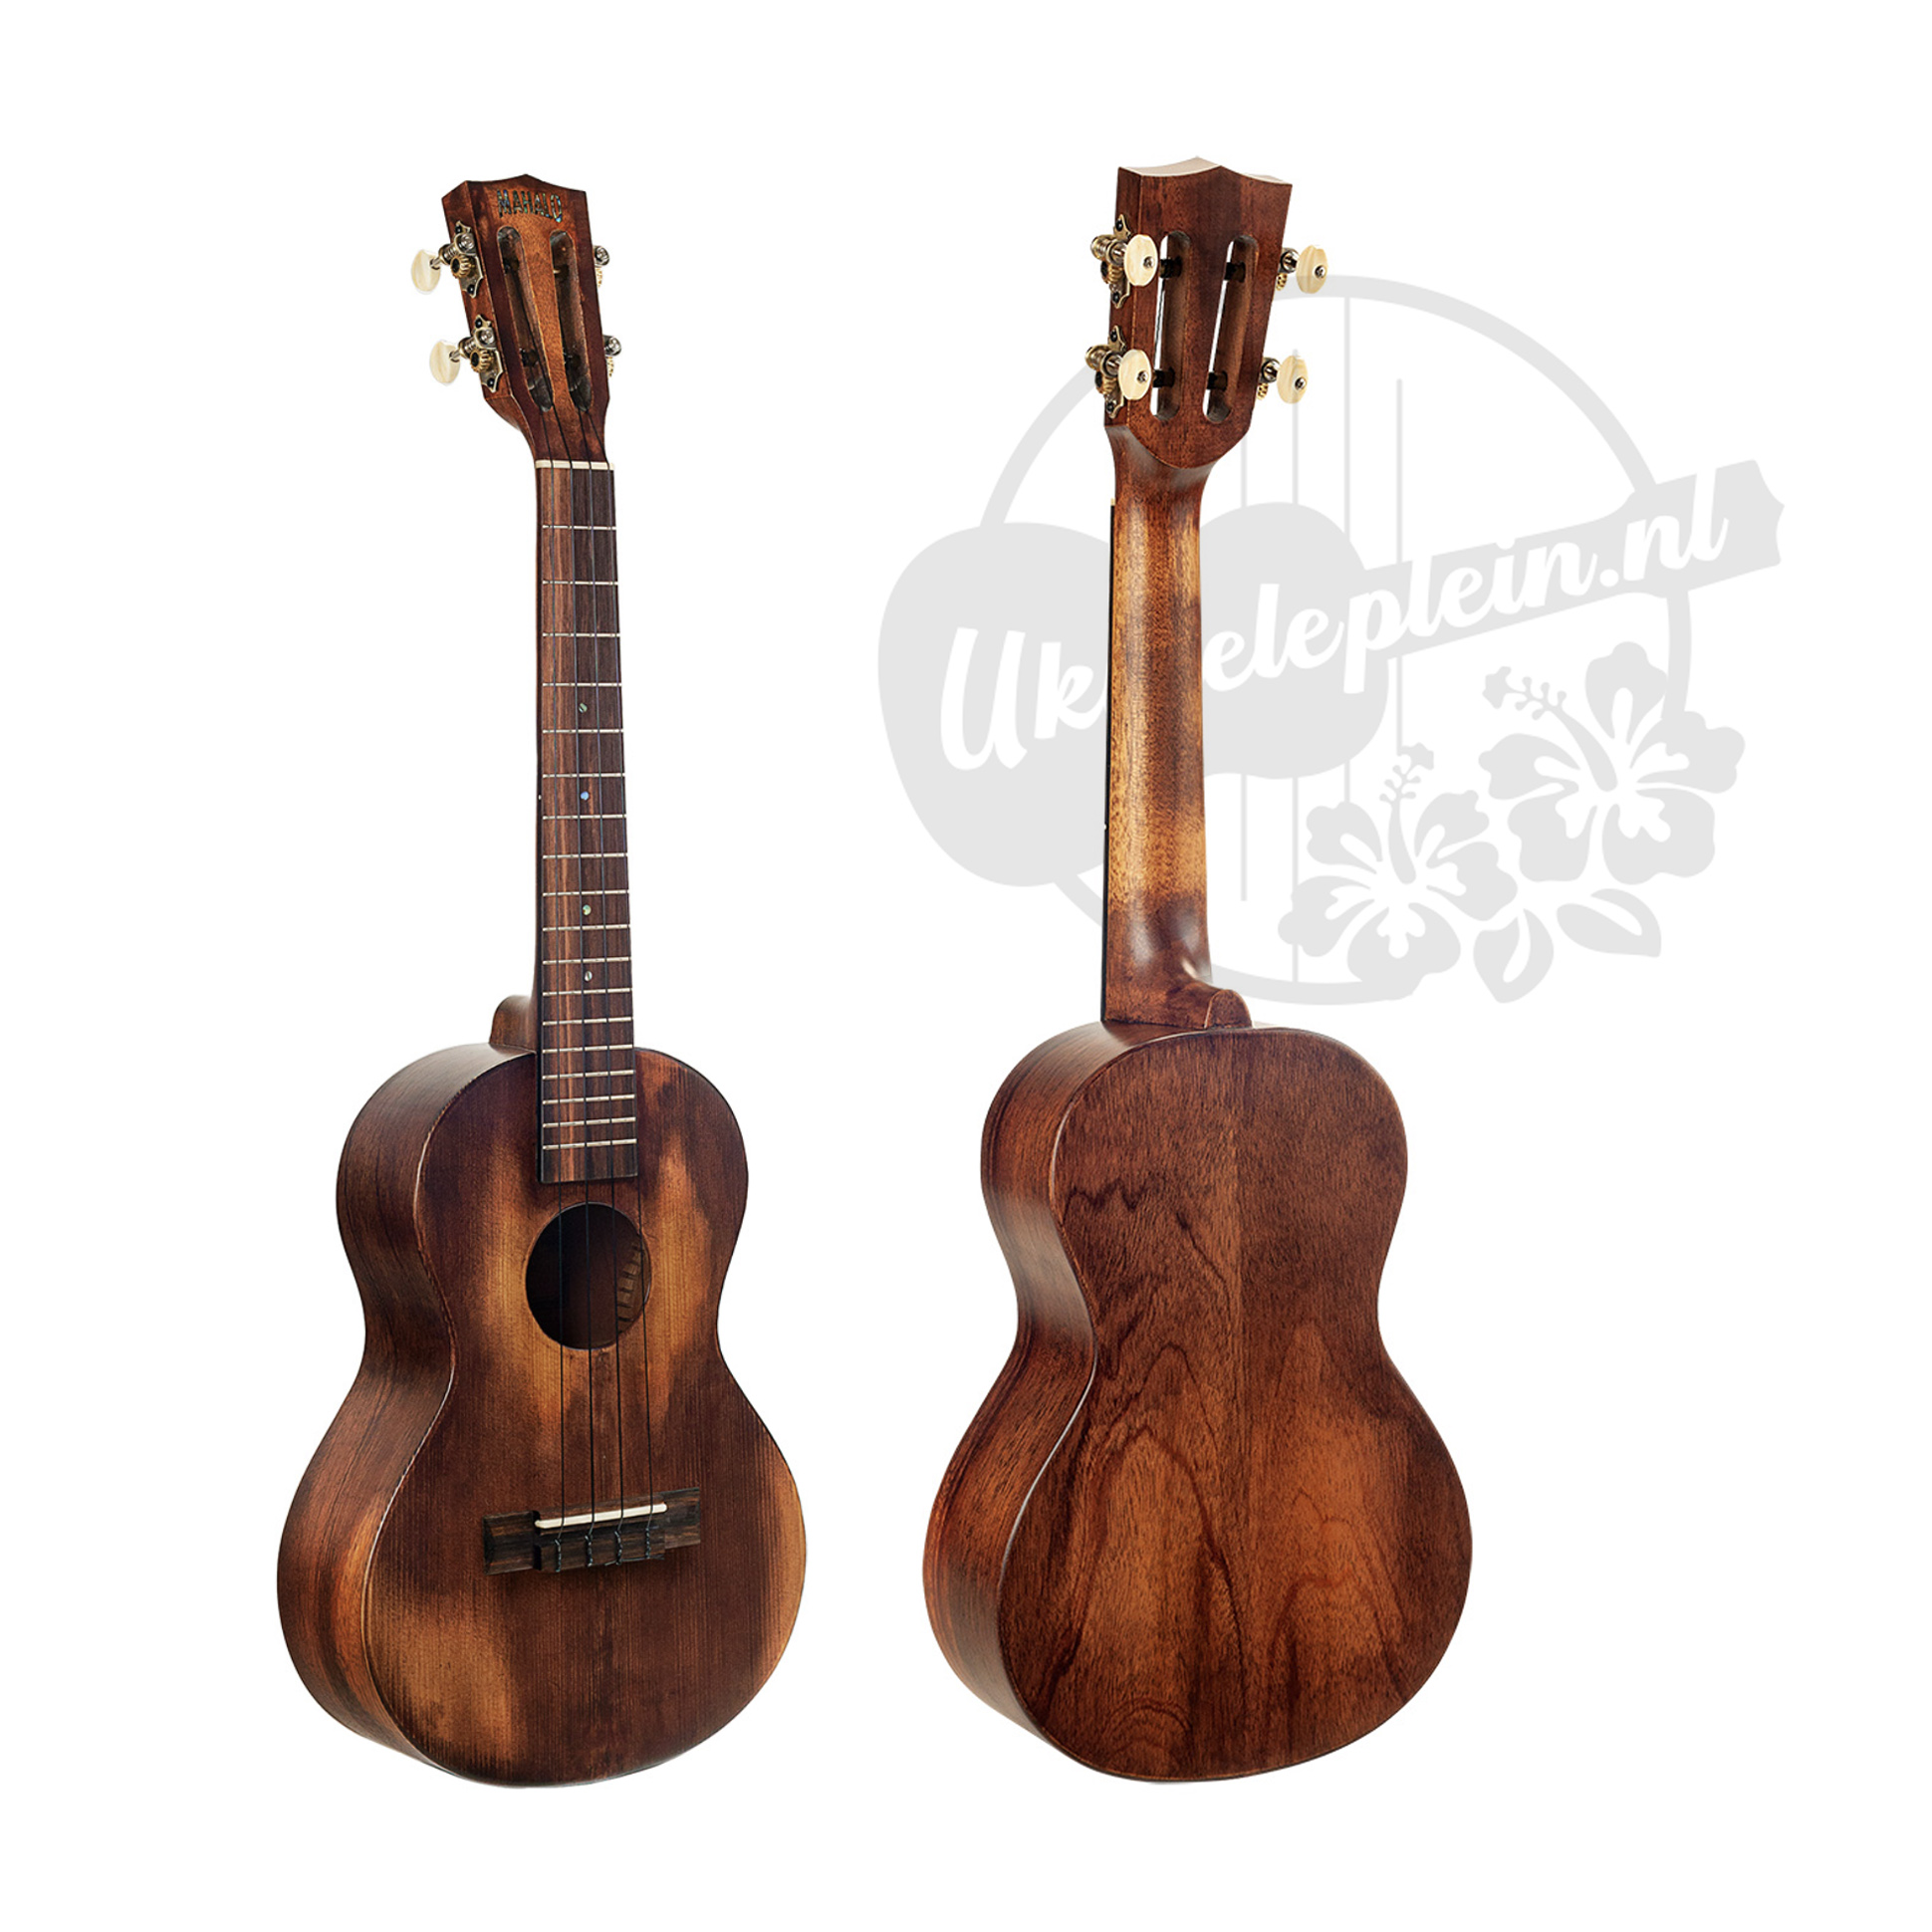 Historic tenor ukulele